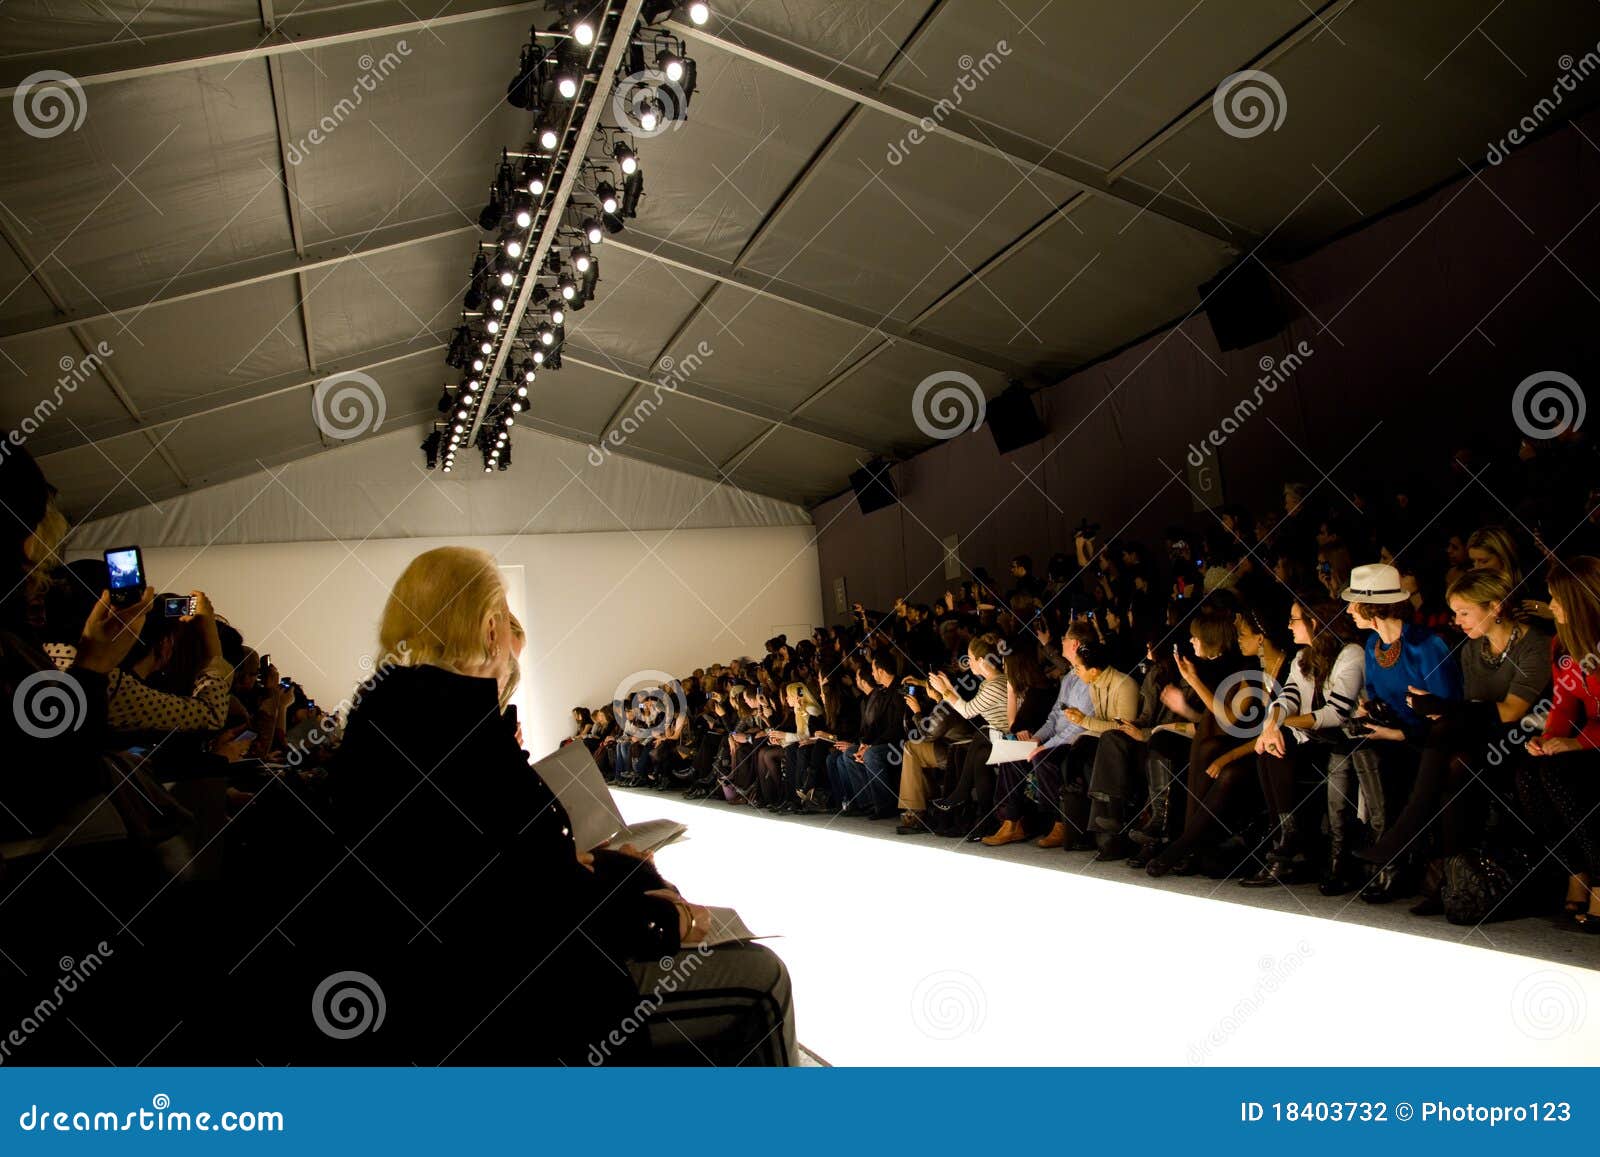 Farah Angsana Tent at NYC Fashion Week Fall 2011 Editorial Photography ...